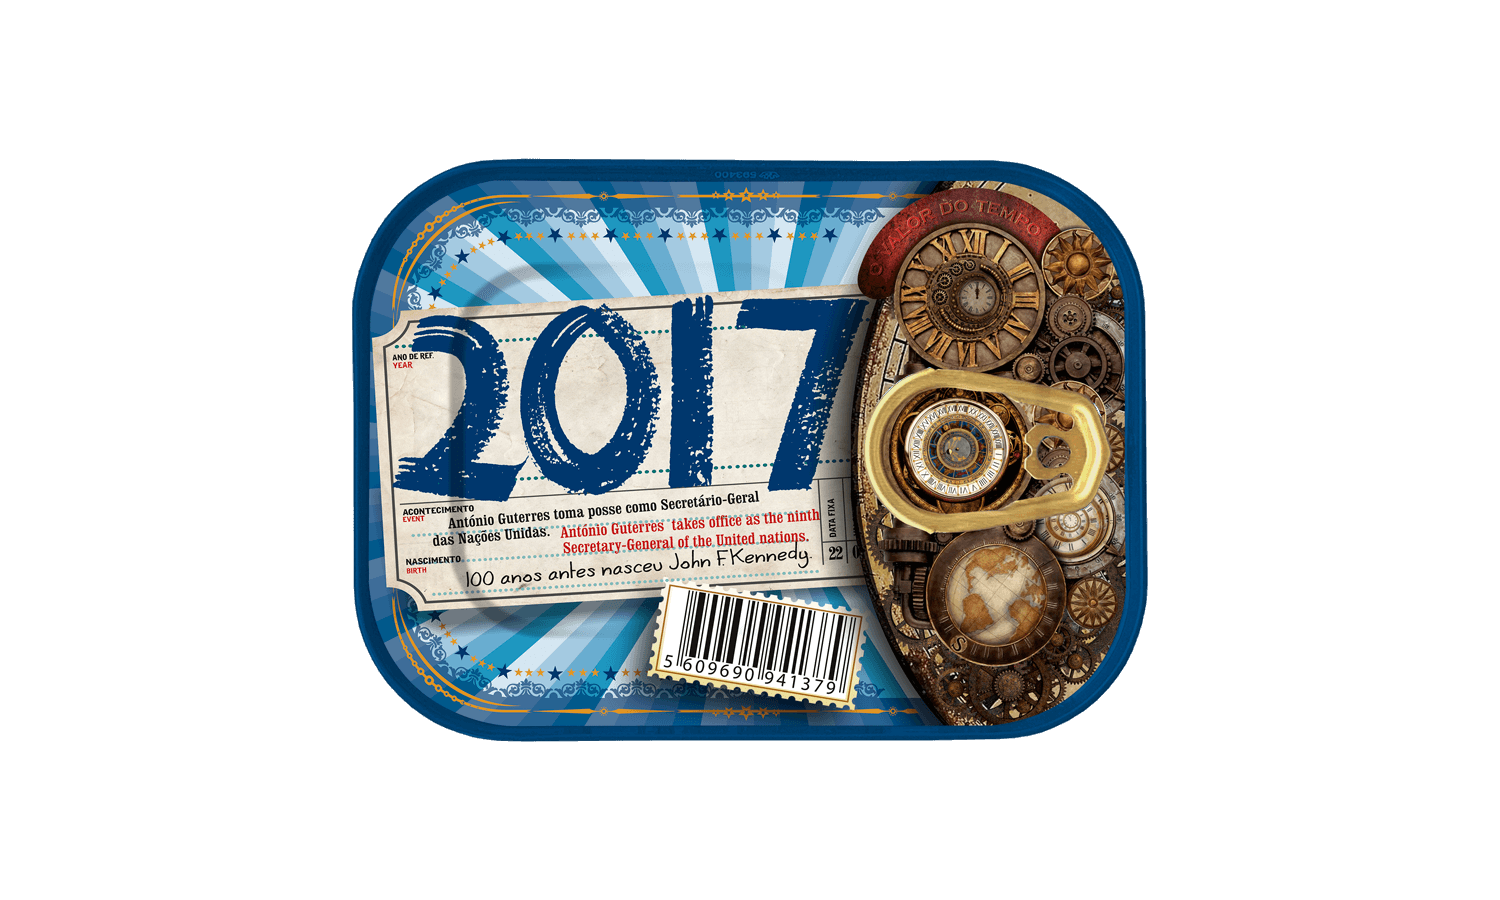 Timeless Sardines | 2017